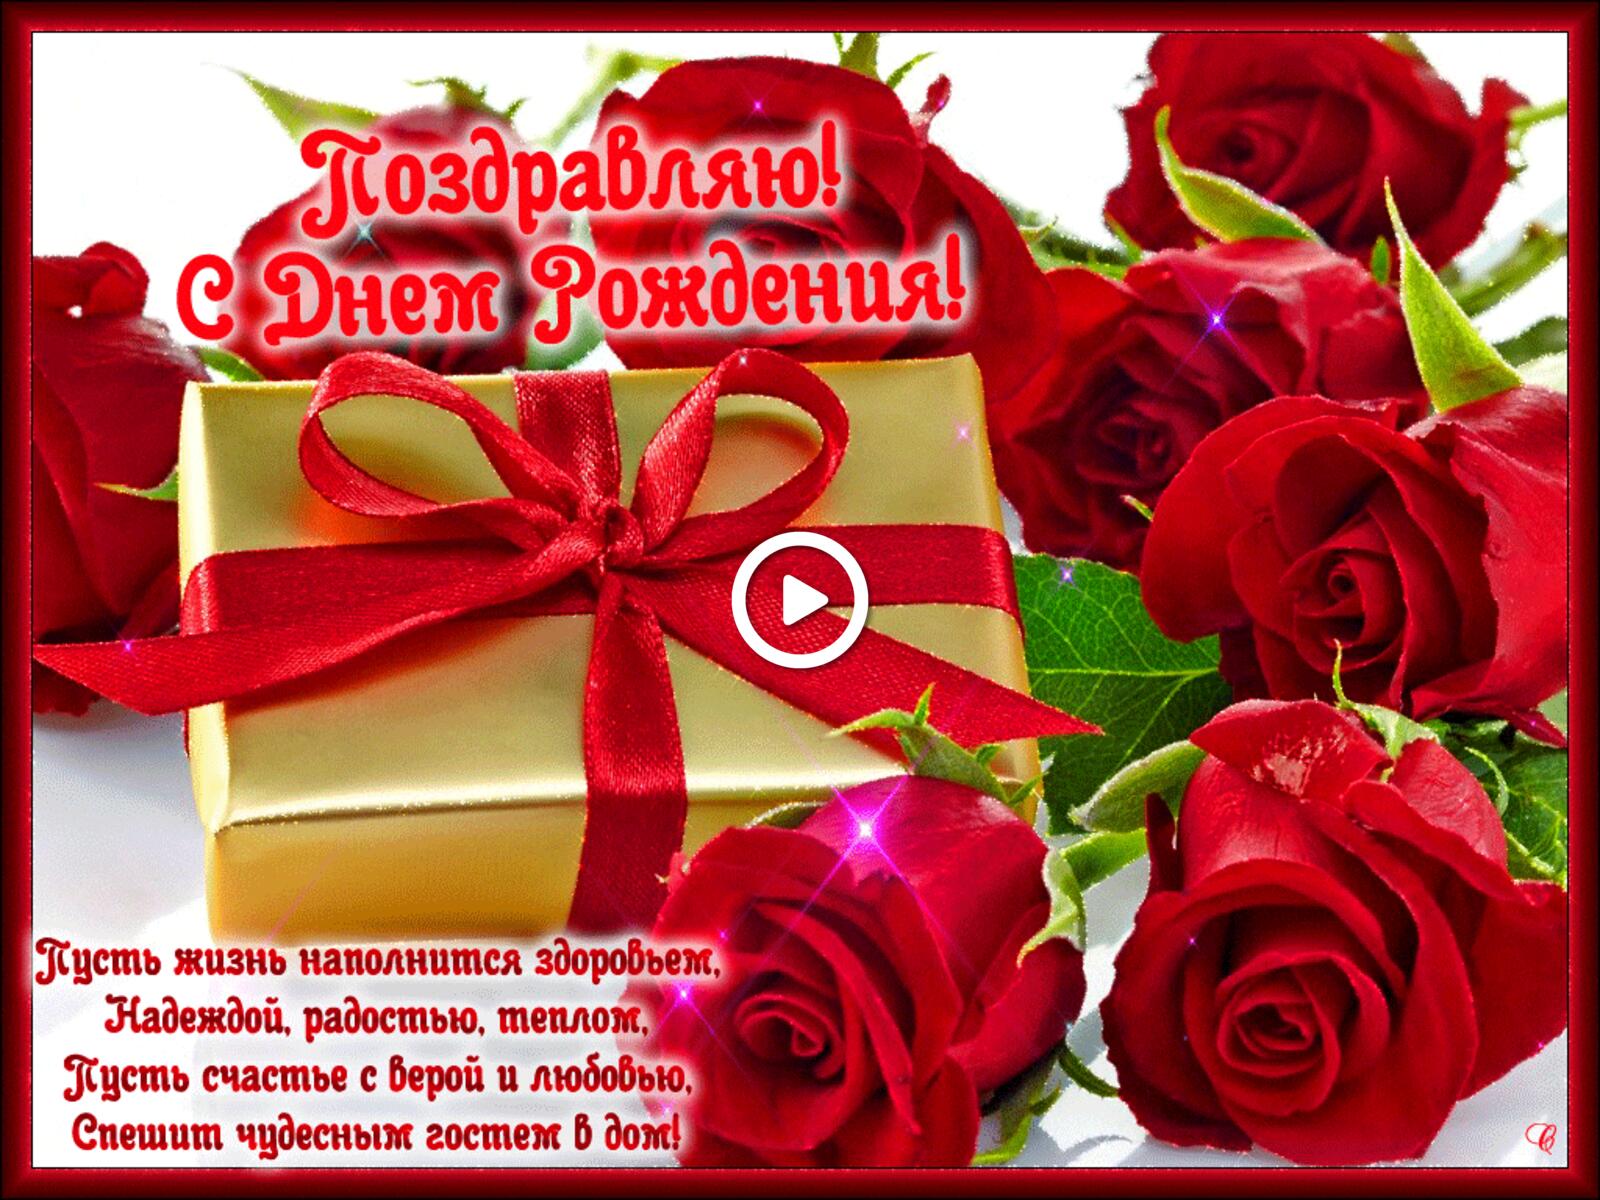 Бесплатная открытка Поздравляю с днем рождения с розами